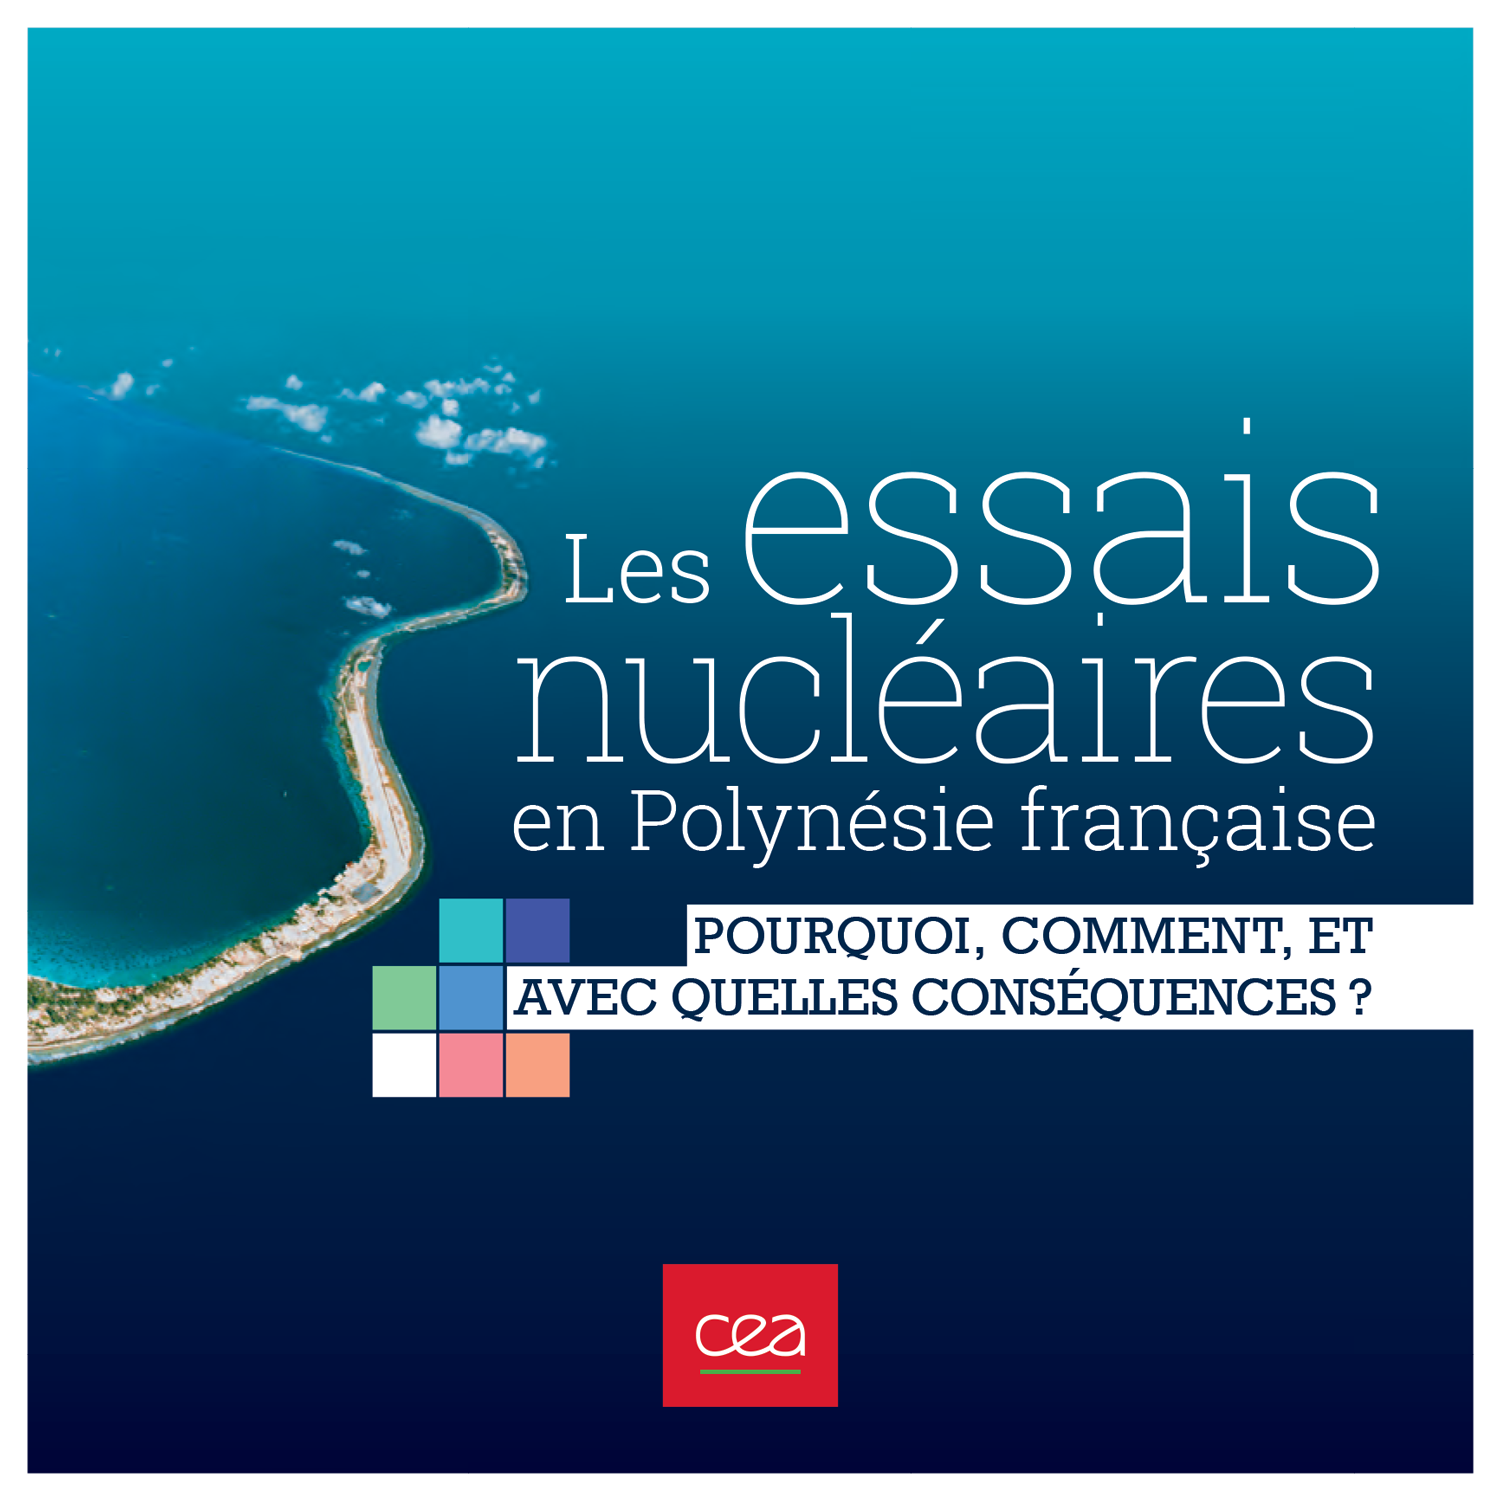 LIVRE-Les-essais-nucleaires-en-Polynesie-francaise-couverture.png